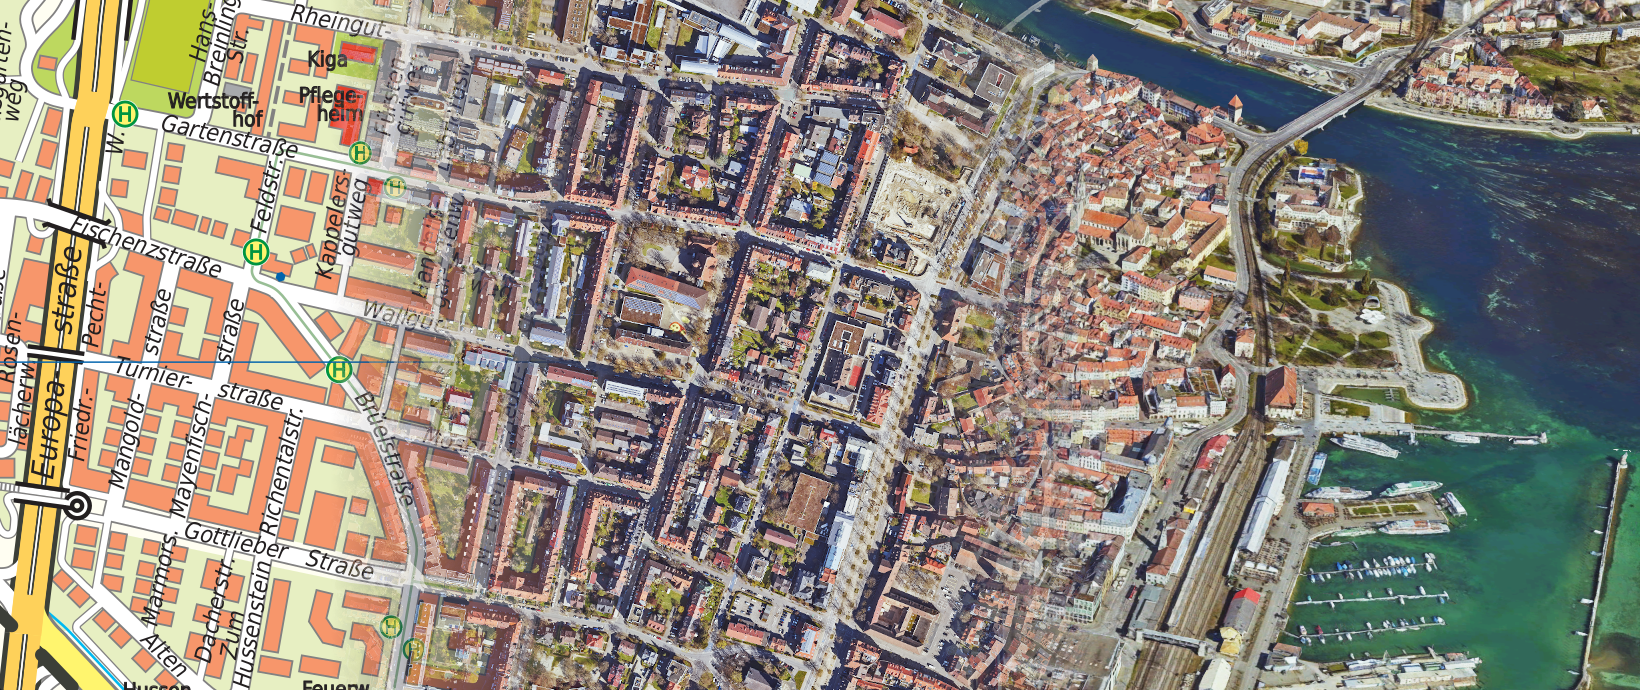 Konstanzer Altstadt und Paradies im Verlauf dargestellt mit dem Stadtplan, Orthobild und 3D-Stadtmodell